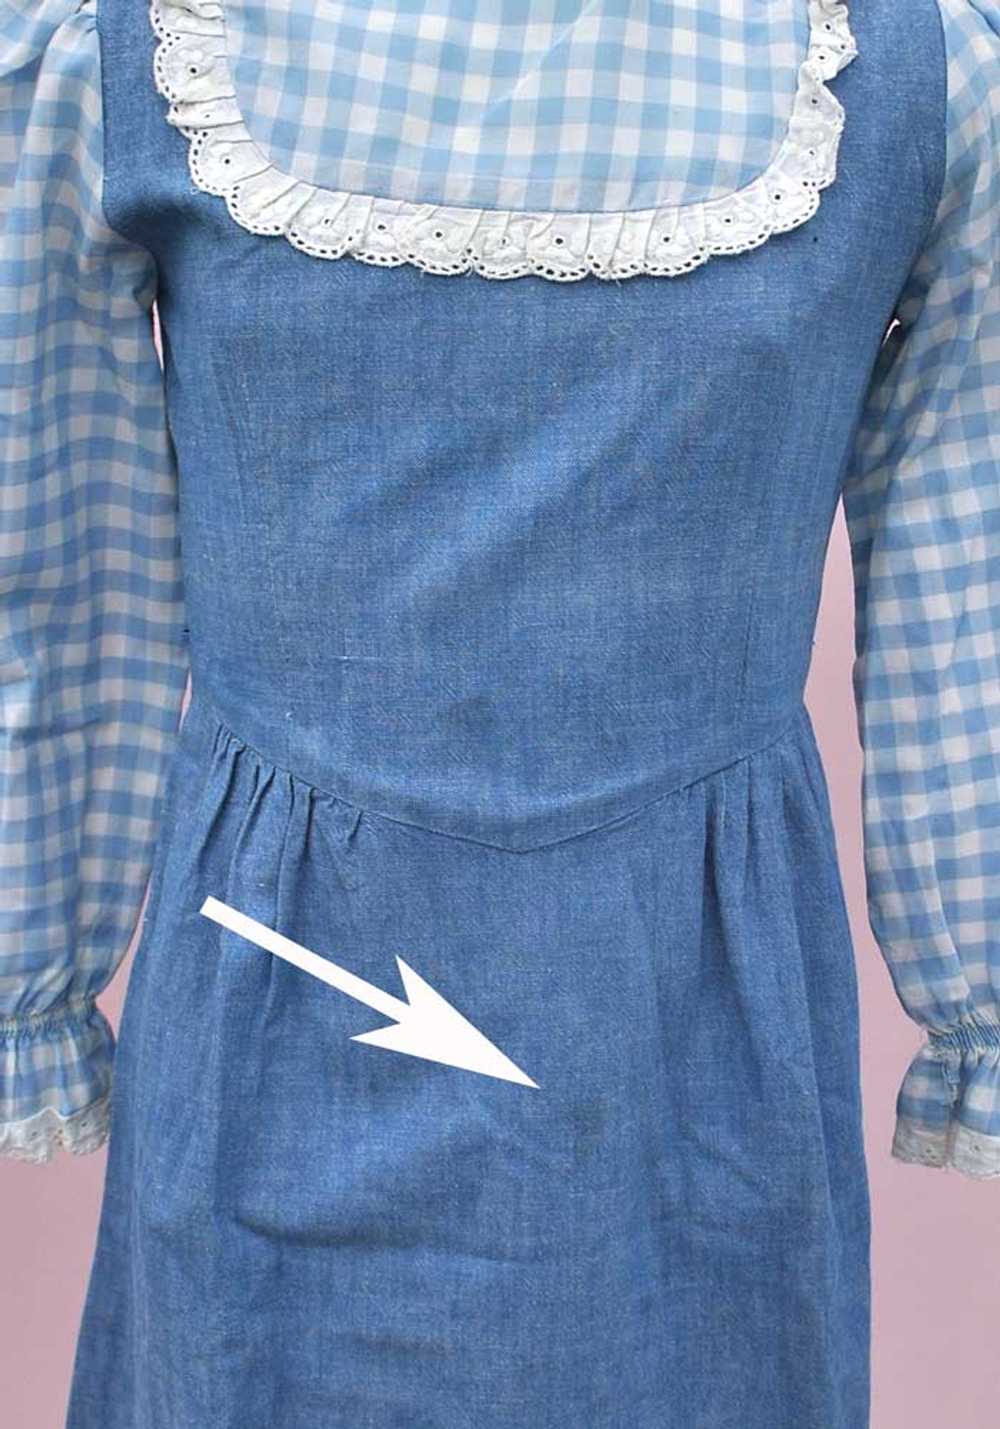 Vintage 70s Girl's Blue Denim Gingham Maxi Dress … - image 4